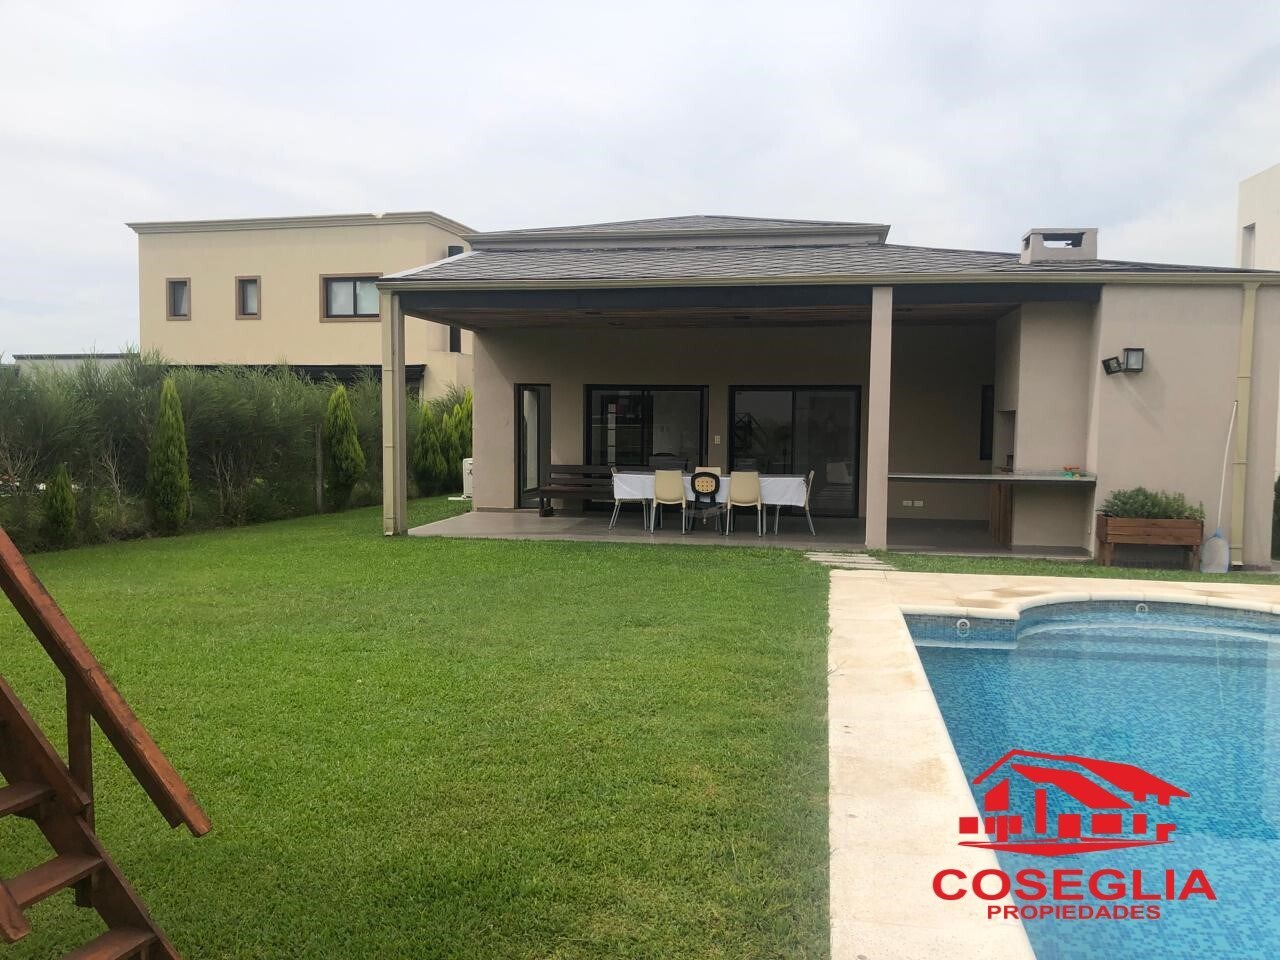 #4946641 | Rental | House | Santa Elena (Coseglia Propiedades)